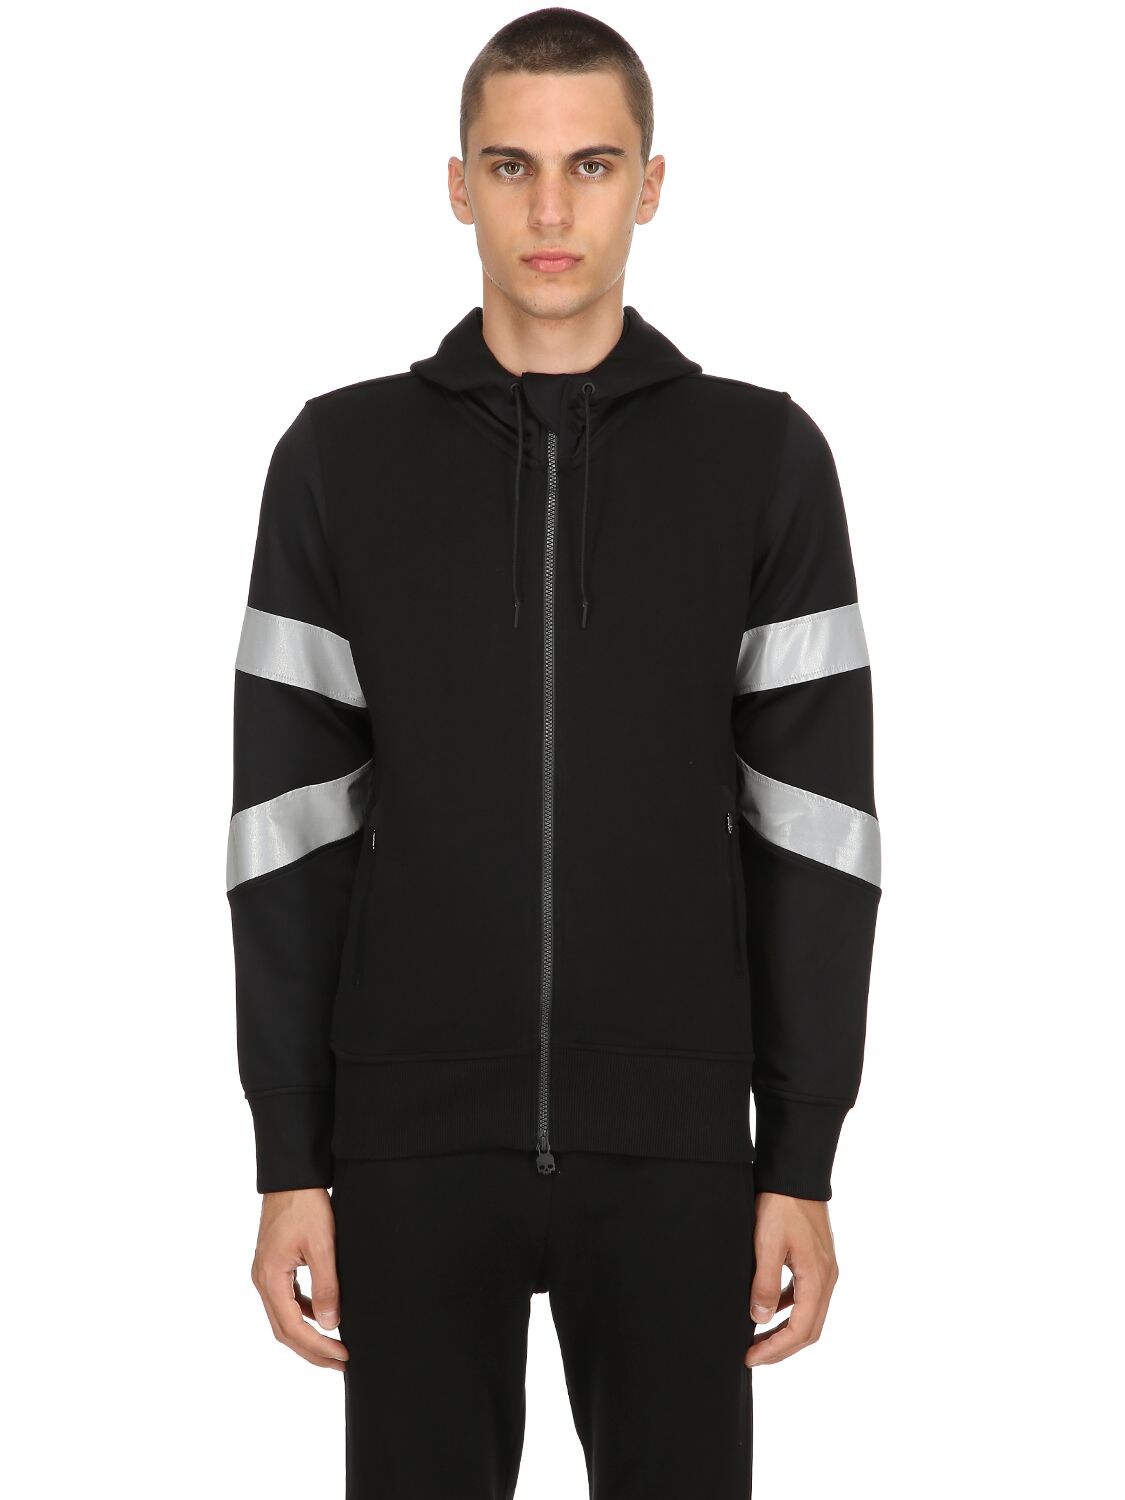 Hydrogen Reflective Zip-up Sweatshirt Hoodie In Black